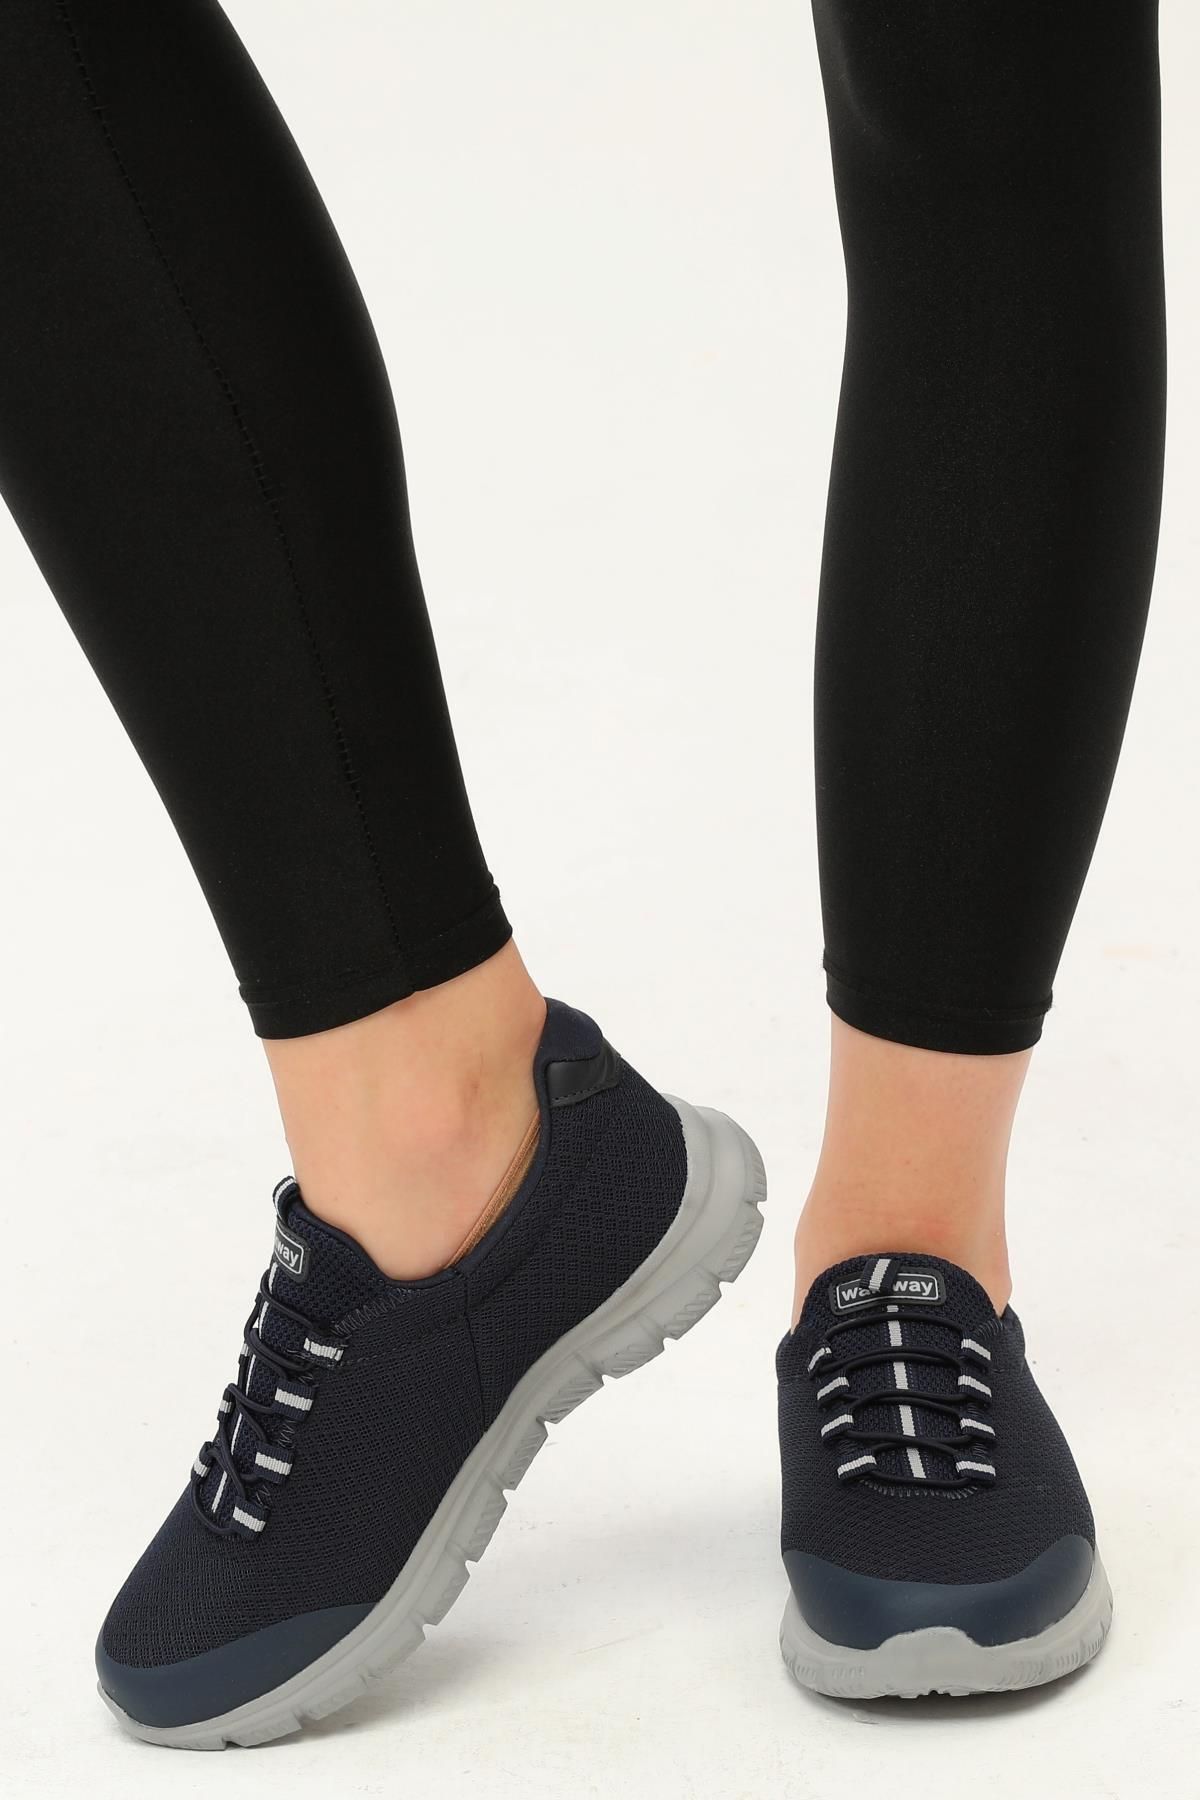 WALKWAY Flexible Lacivert-buz Comfort Bağcıksız Yürüyüş Ayakkabı